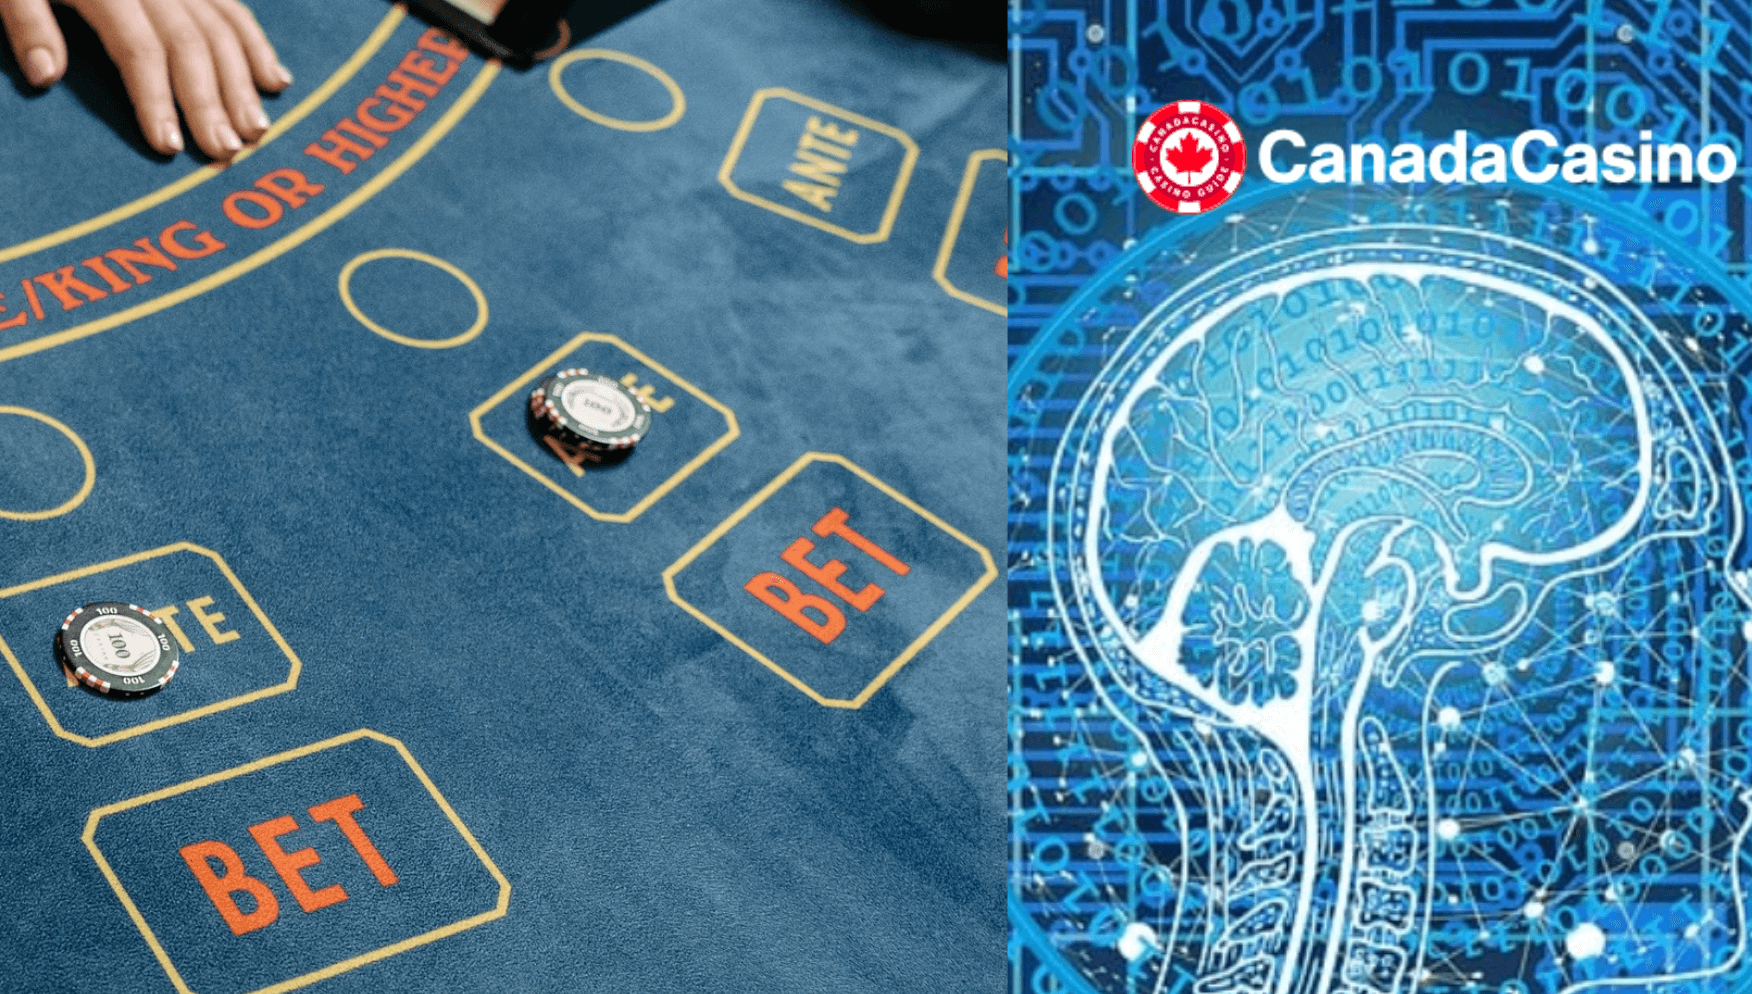 AI Presenters for Live Dealer Casinos